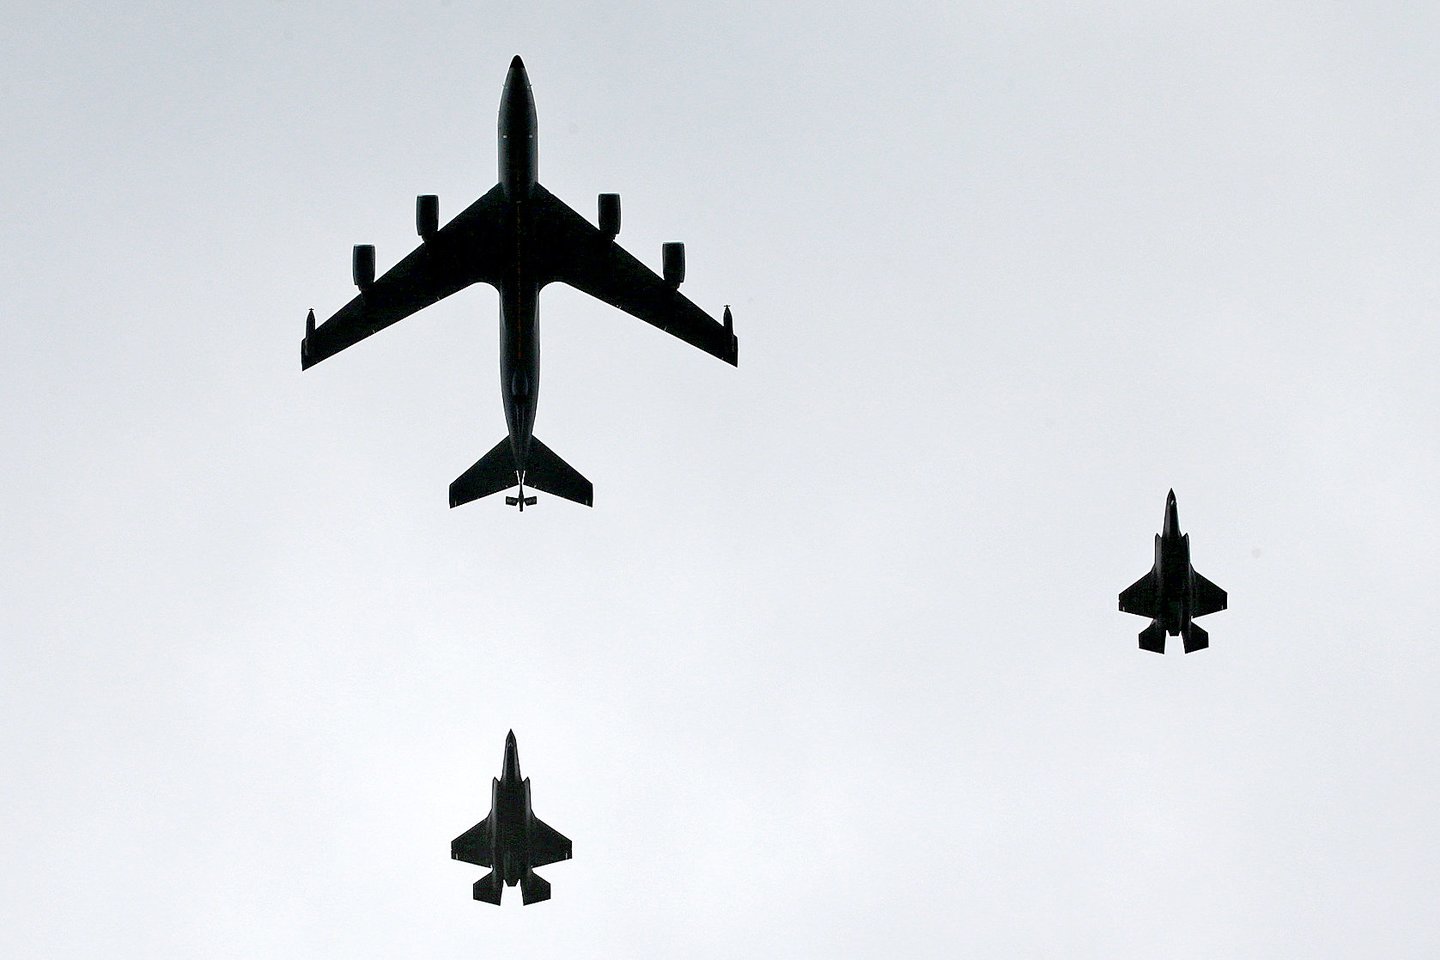  Ketvirtadienio pavakarę du Jungtinių Amerikos Valstijų karinių oro pajėgų naikintuvai F-35 ir strateginis kuro papildymo ore orlaivis „KC-135 Stratotanker“ praskrido virš Vilniaus.<br> R. Danisevičiaus nuotr.